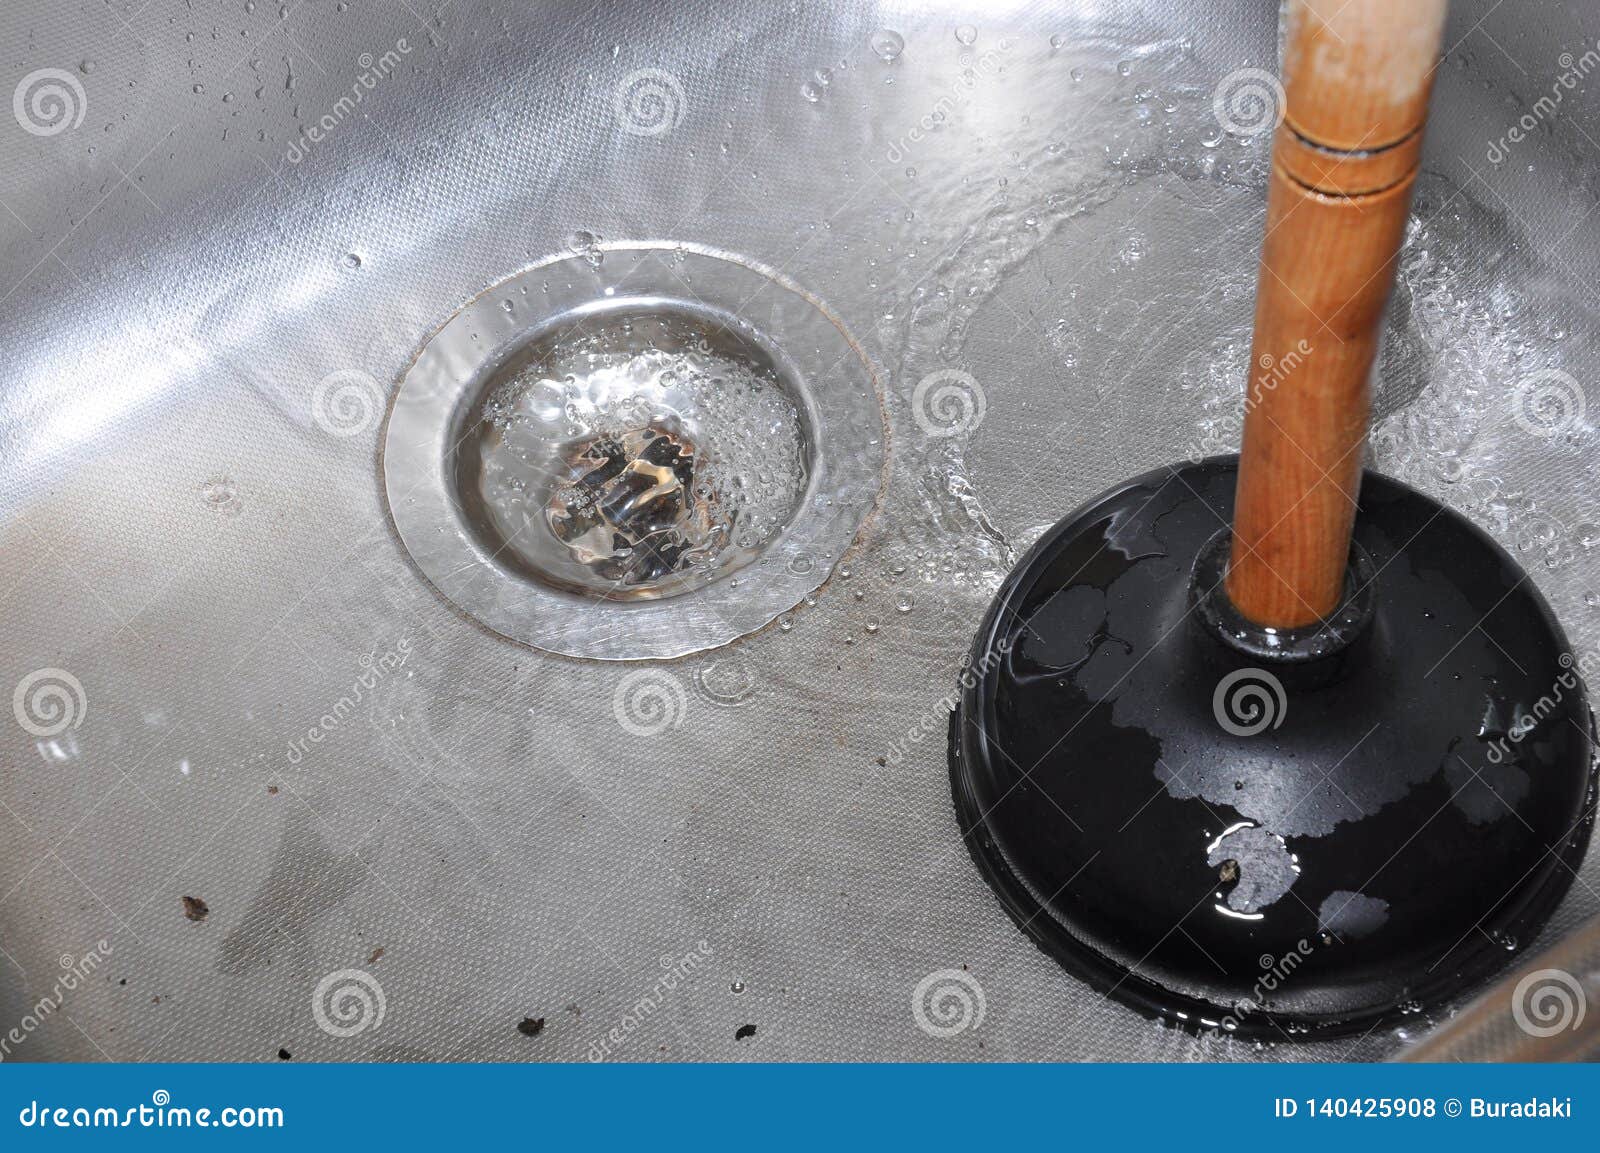 does plunger work on kitchen sink